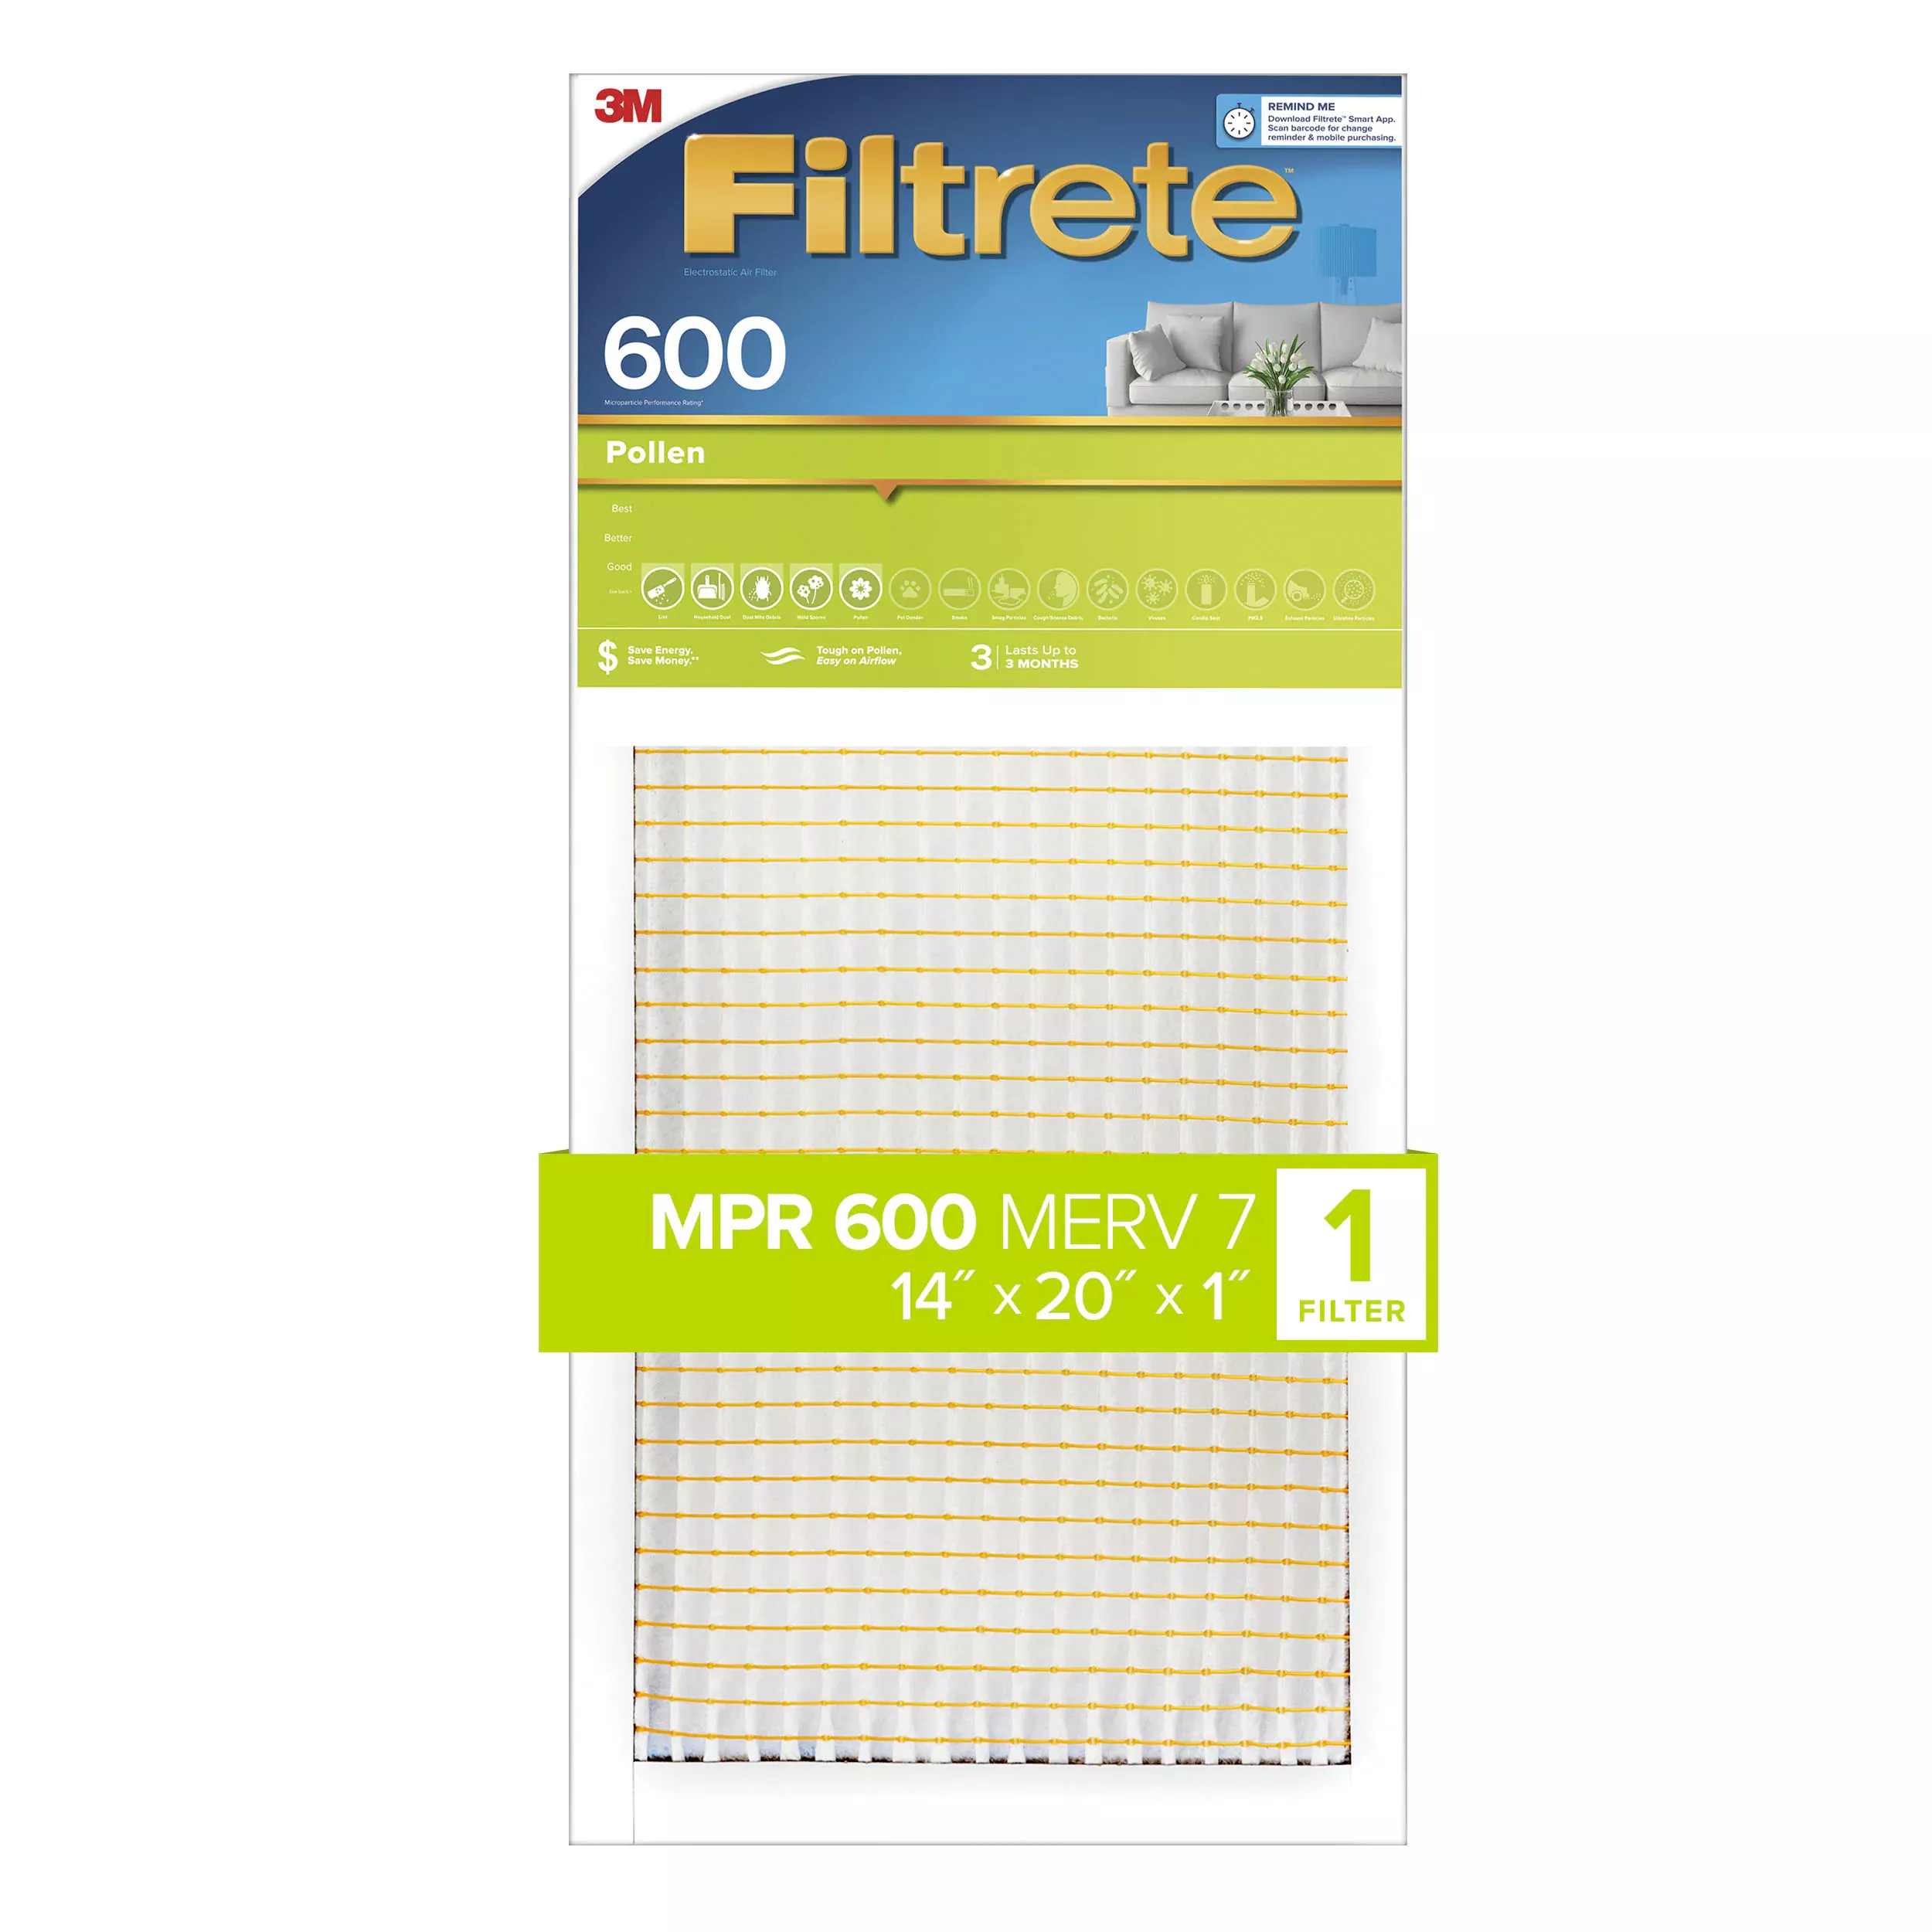 Filtrete™ Pollen Air Filter, 600 MPR, 9835-4, 14 in x 20 in x 1 in (35,5
cm x 50,8 cm x 2,5 cm)